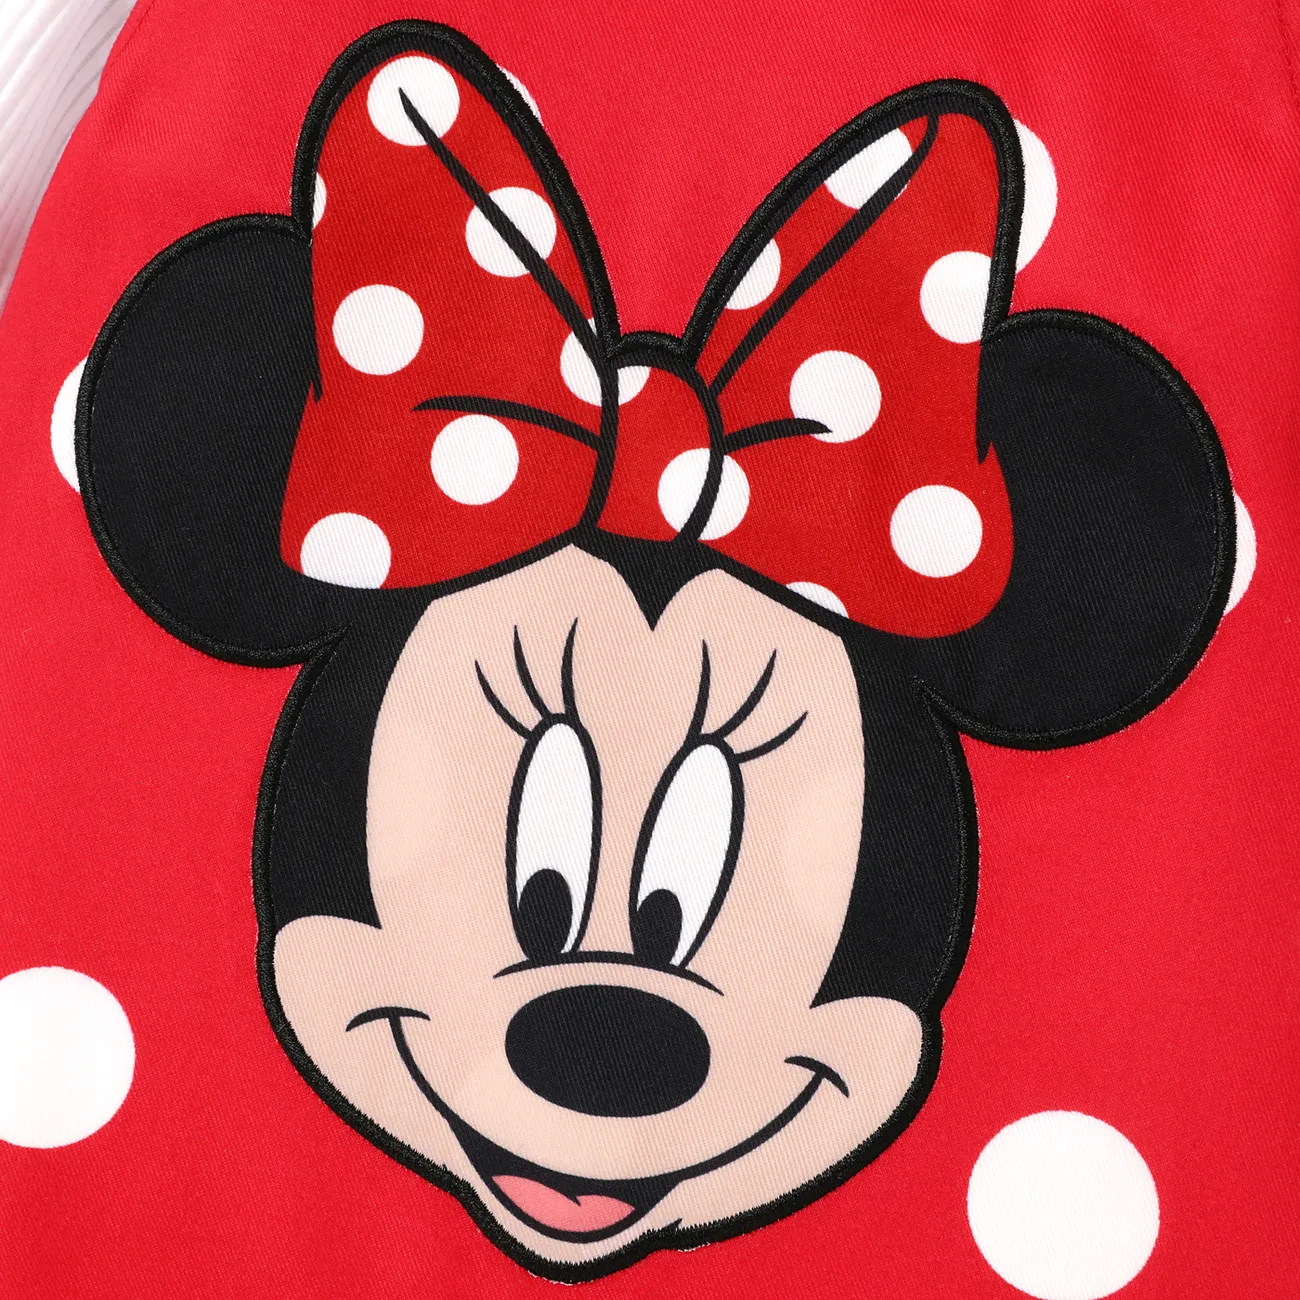 Disney Mickey and Friends فساتين مواليد حريمي كم طويل كم فضفاض بكشكشة نقش منقط احمر ابيض big image 1